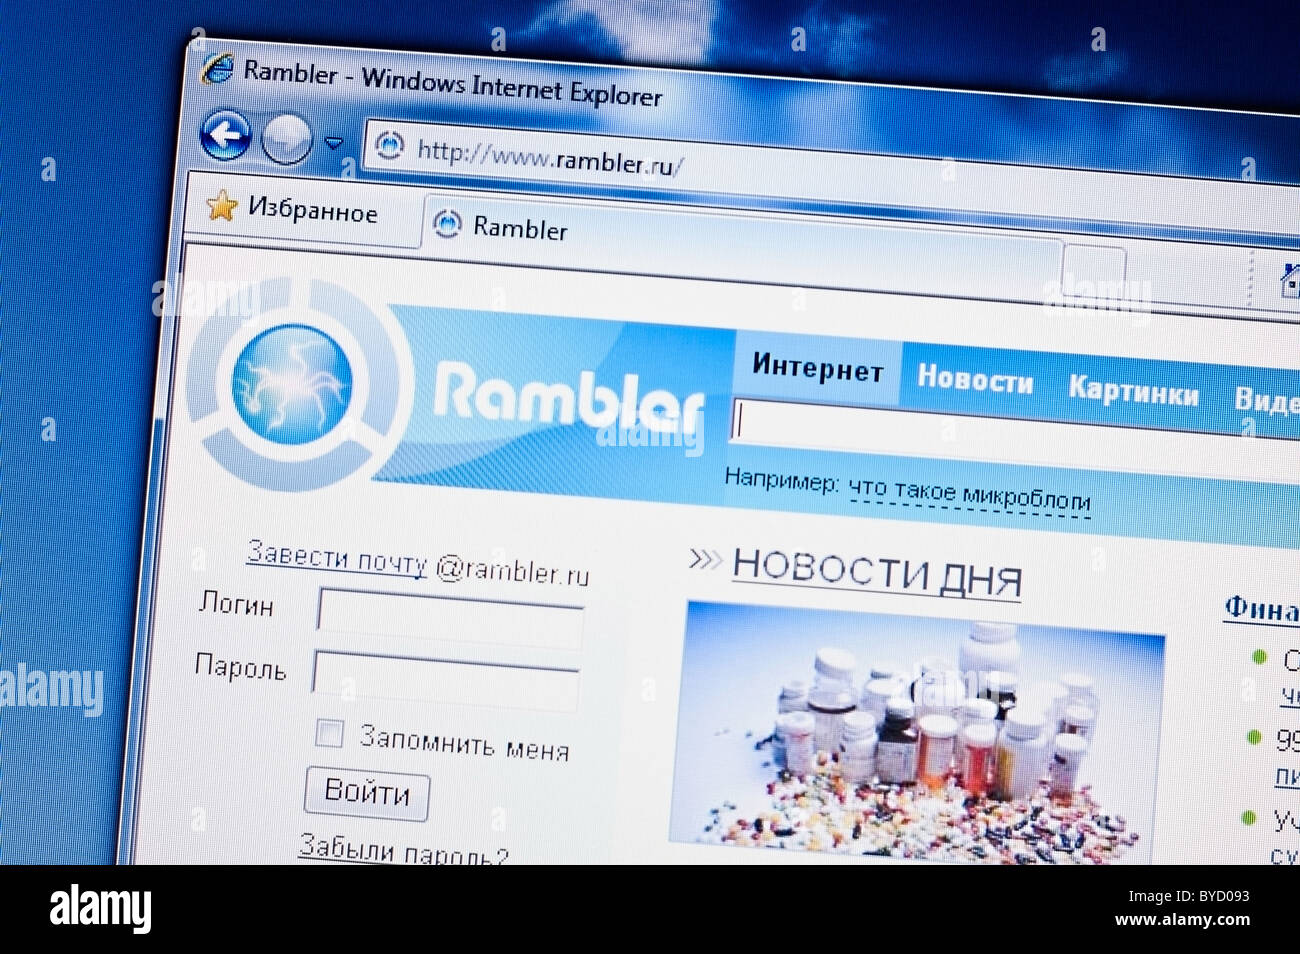 Site Internet avec page russe de rambler.ru. Photo d'écran du moniteur. Banque D'Images